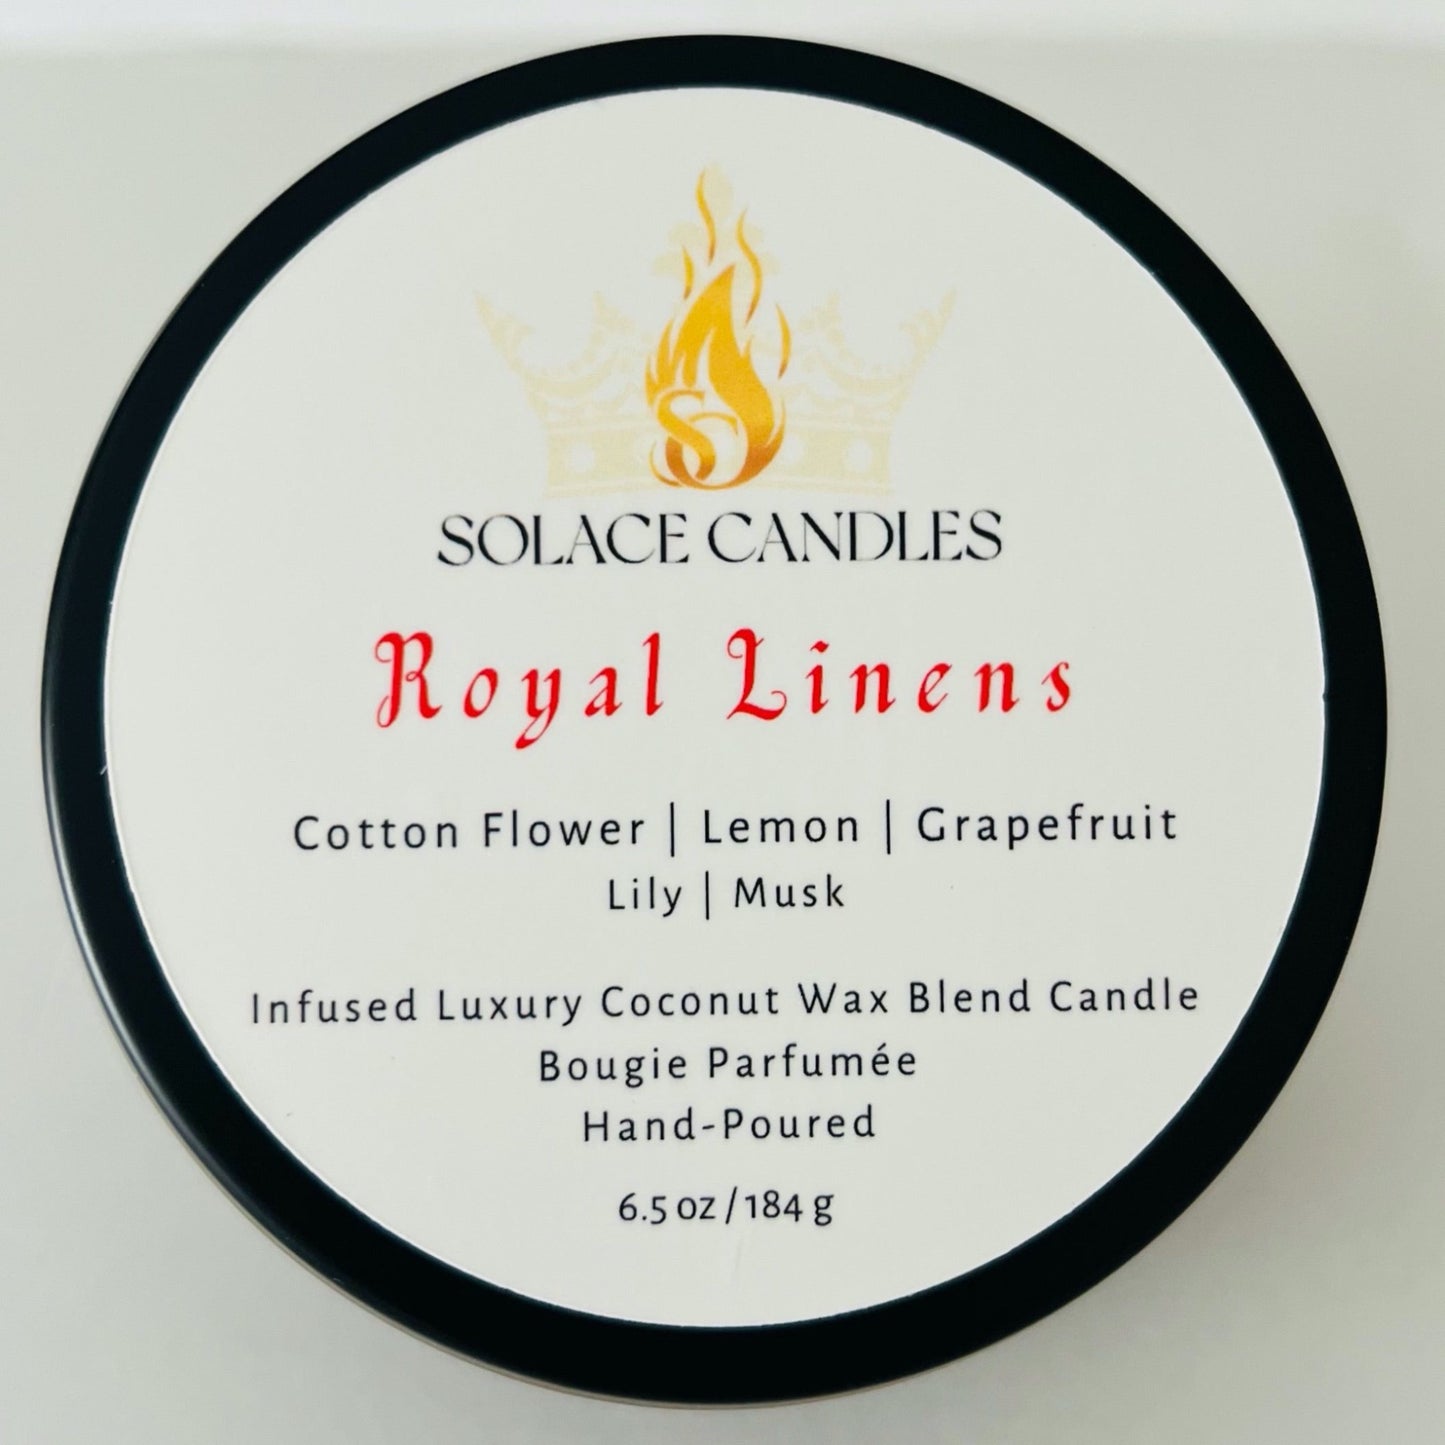 Royal Linens